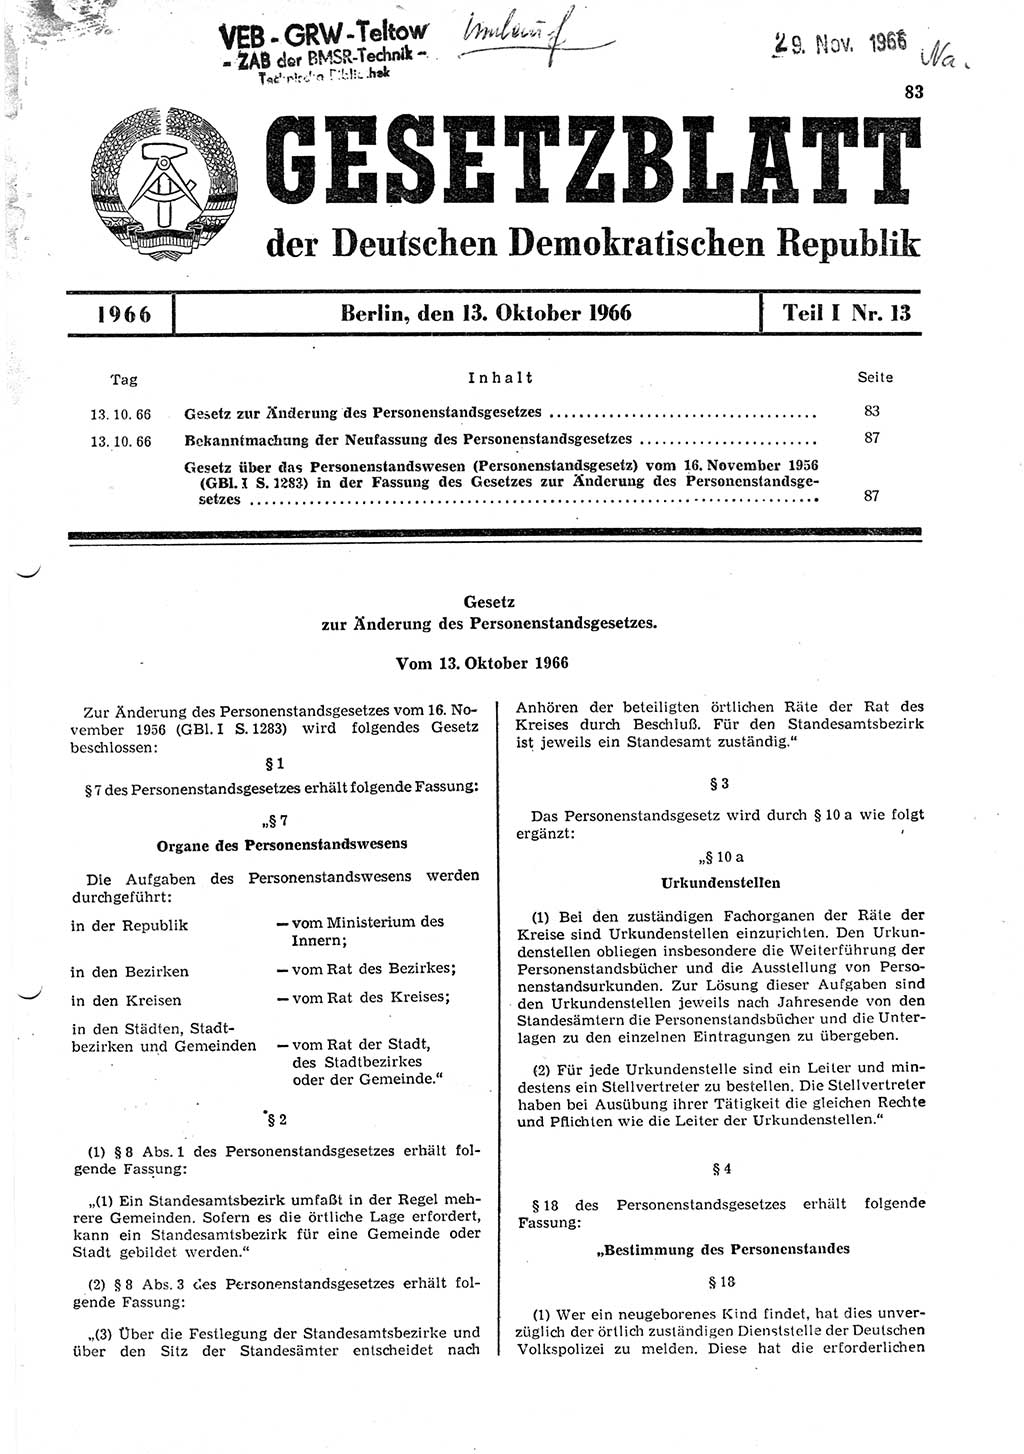 Gesetzblatt (GBl.) der Deutschen Demokratischen Republik (DDR) Teil Ⅰ 1966, Seite 83 (GBl. DDR Ⅰ 1966, S. 83)